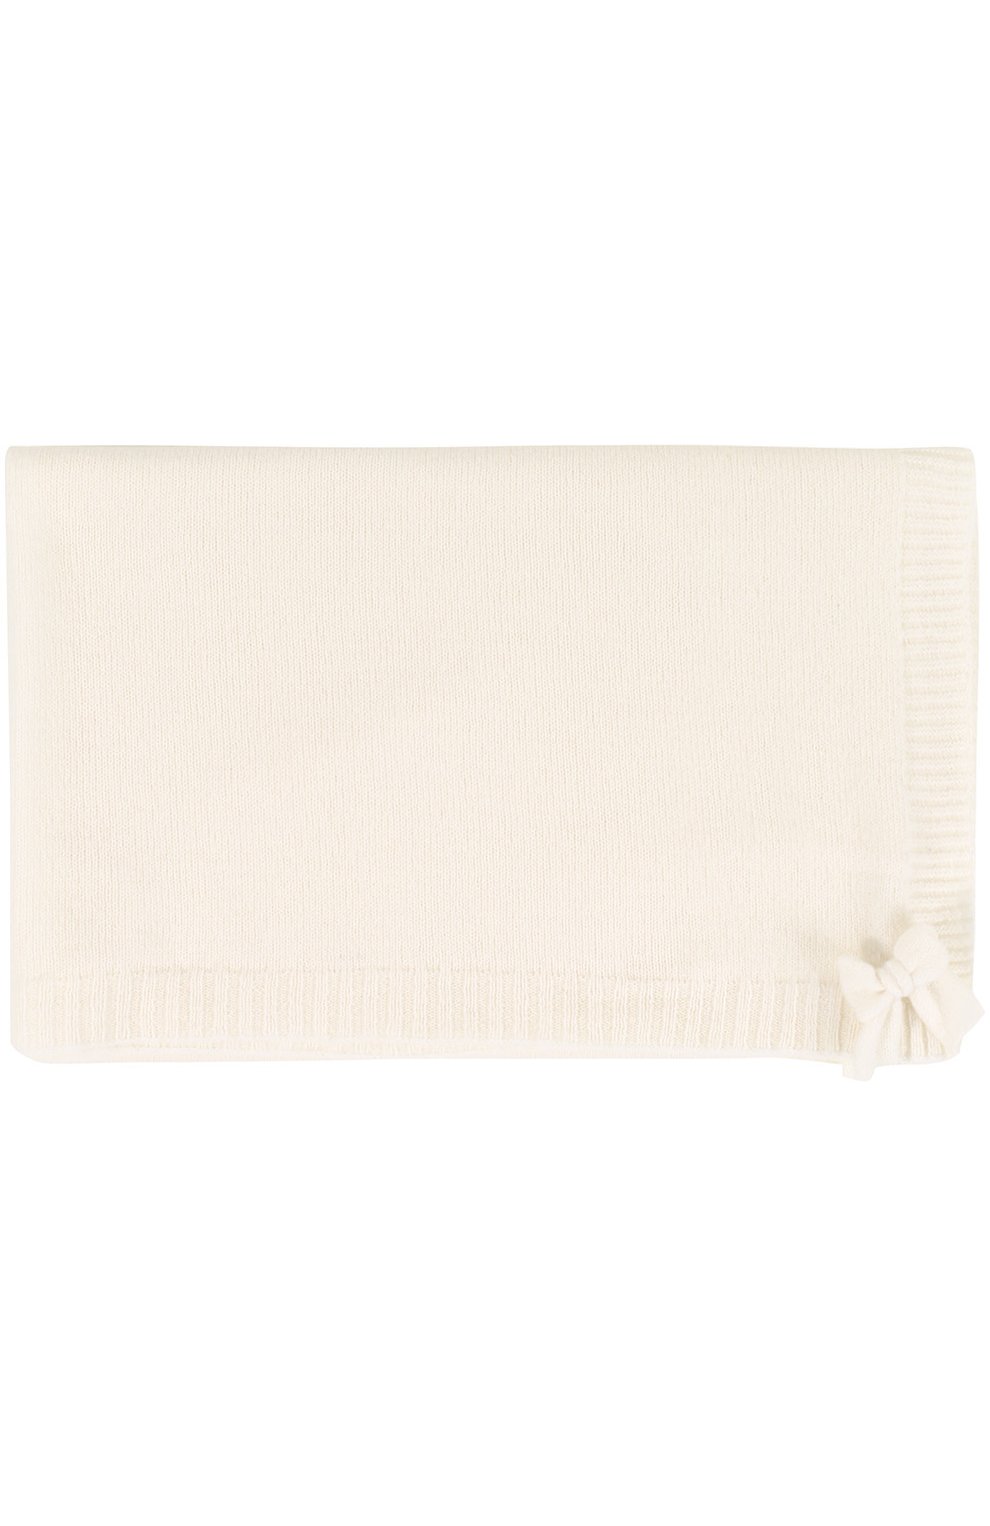 Детского одеяло из кашемира BABY T белого цвета, арт. 16AIC882C0 | Фото 1 (Материал: Текстиль, Кашемир, Шерсть; Статус проверки: Проверена категория)